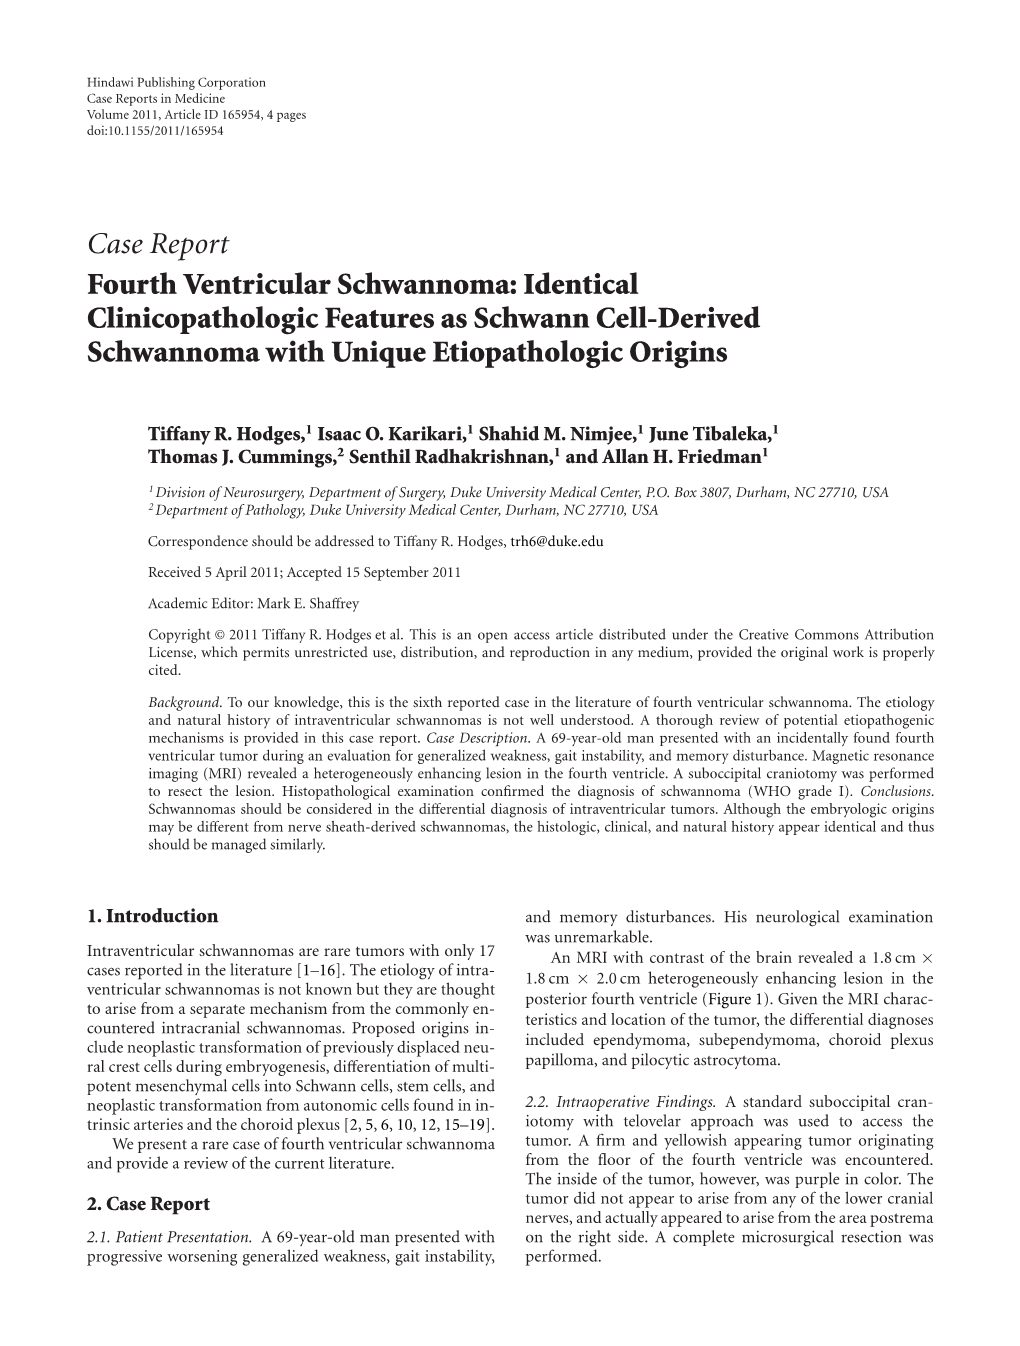 Fourth Ventricular Schwannoma: Identical Clinicopathologic Features As Schwann Cell-Derived Schwannoma with Unique Etiopathologic Origins